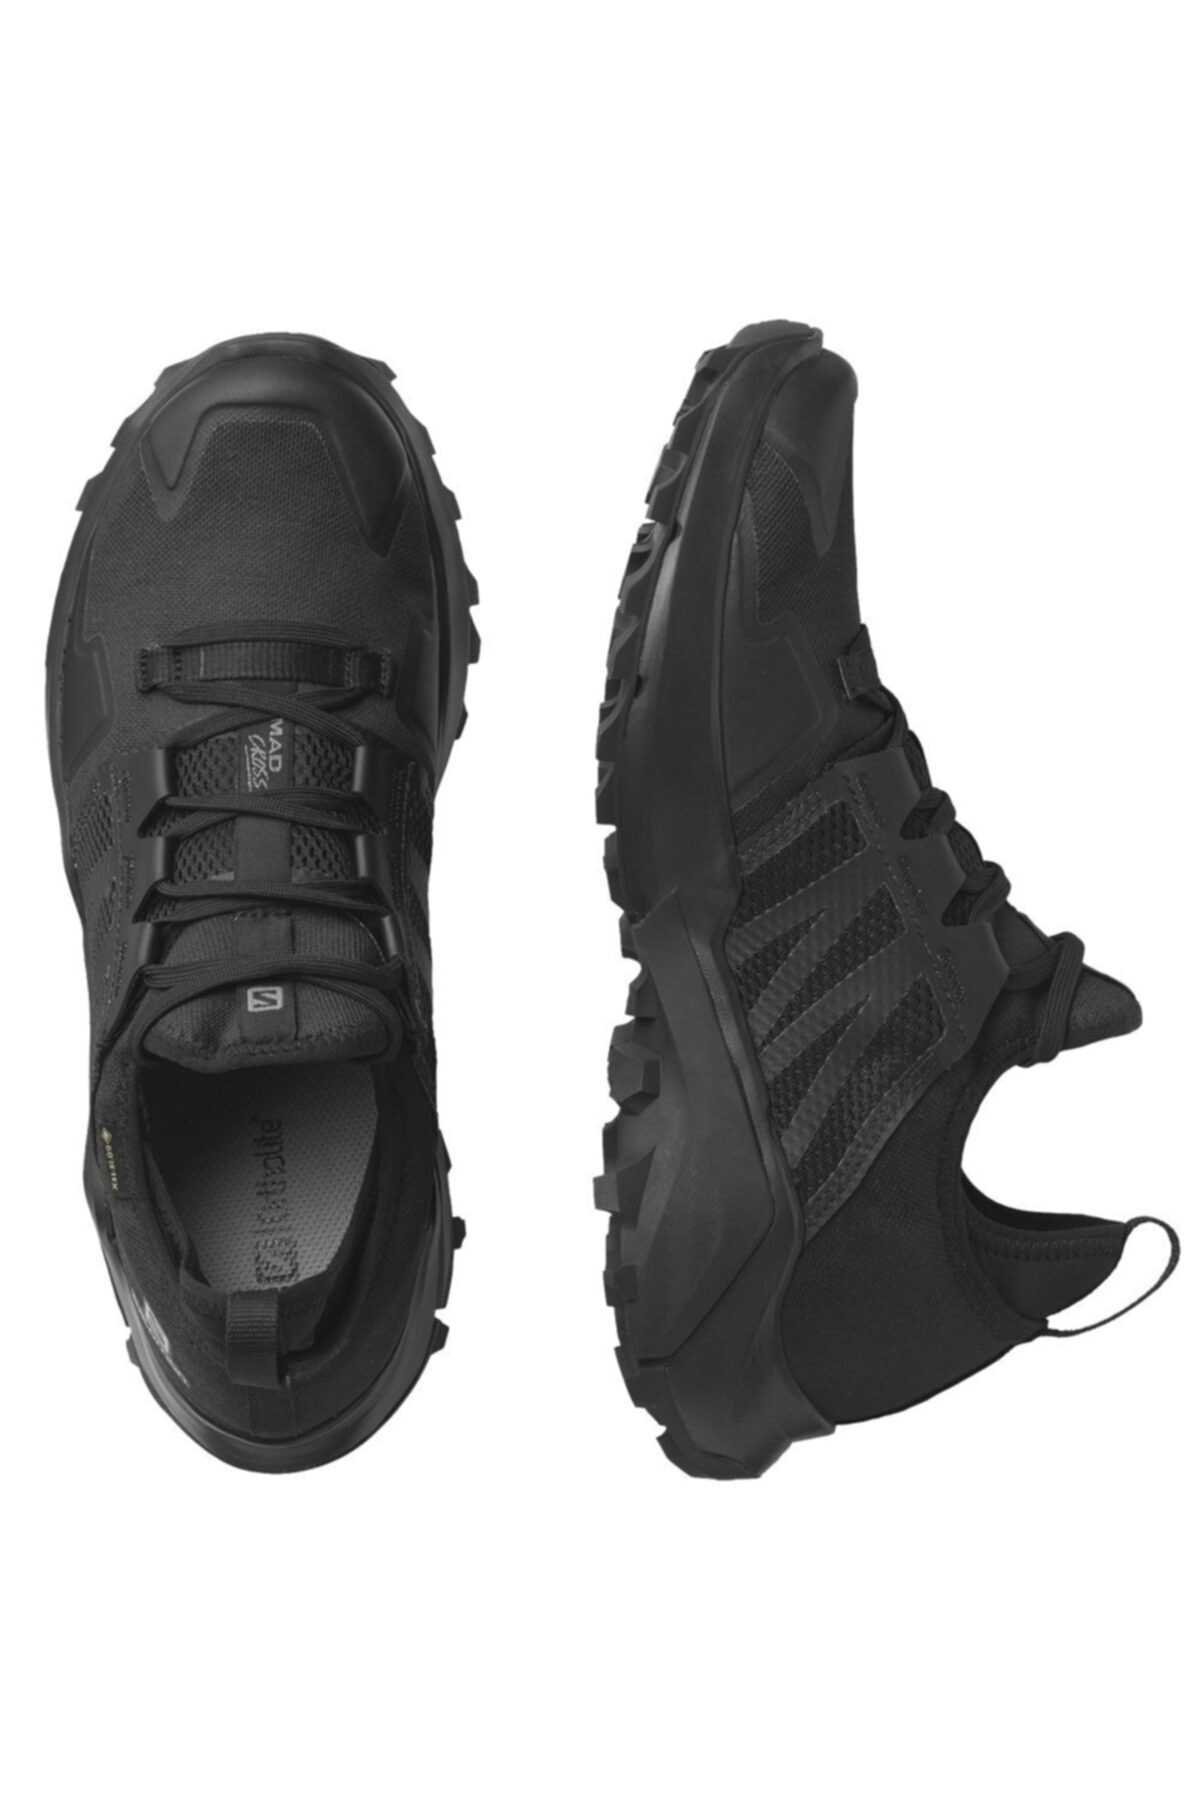 خرید انلاین کفش کوهنوردی مردانه برند Salomon رنگ مشکی کد ty133632607